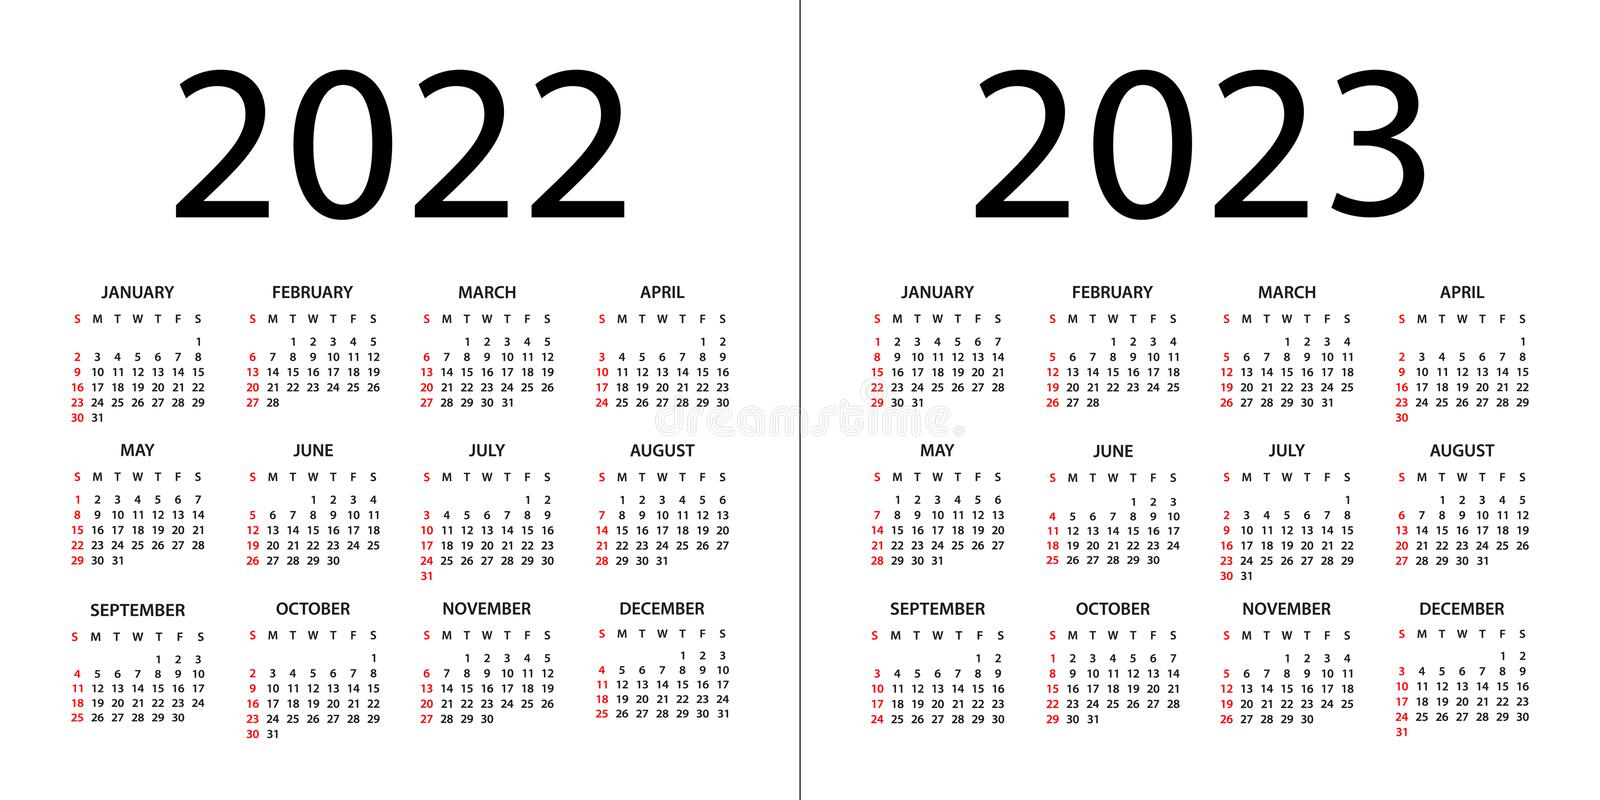 Calendarios 2022 Y 2023 Le calendrier 2022/2023 est disponible - LAURA-TT